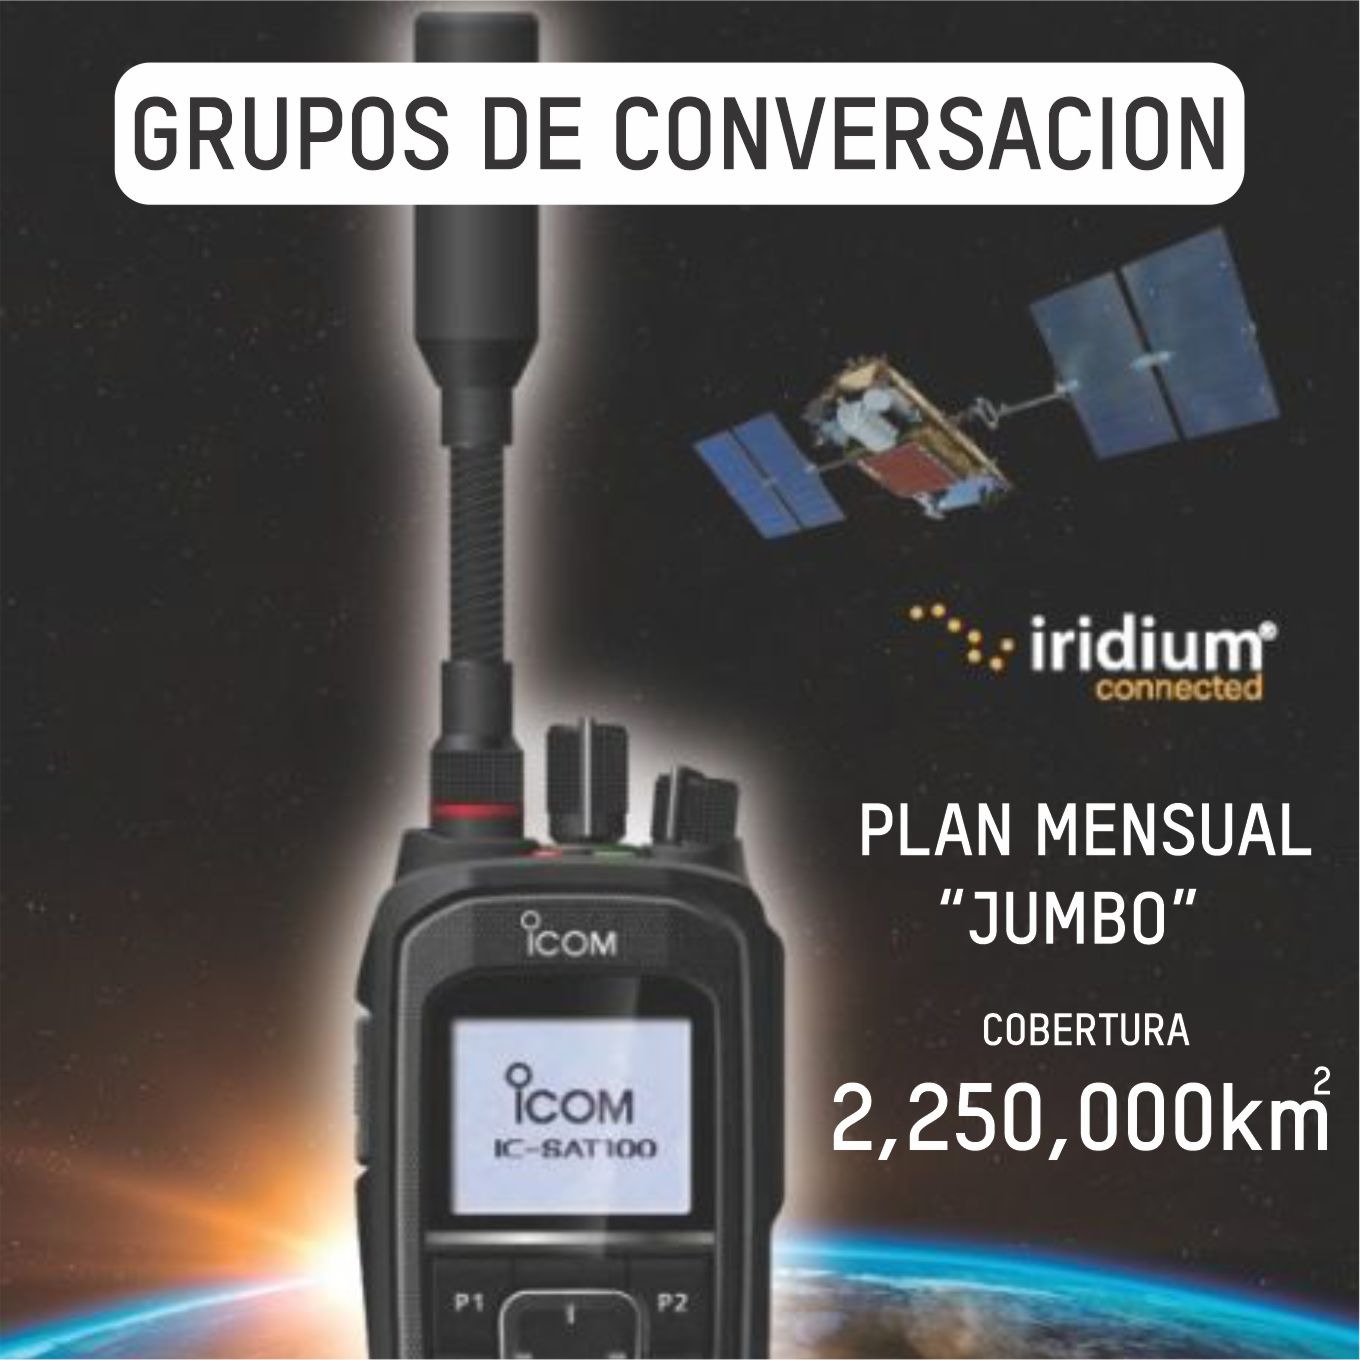 Plan Mensual Jumbo de Conversación por Grupo Iridium PTT Radiocomunicación Satelital (hasta 2,250,000 km cuadrados)